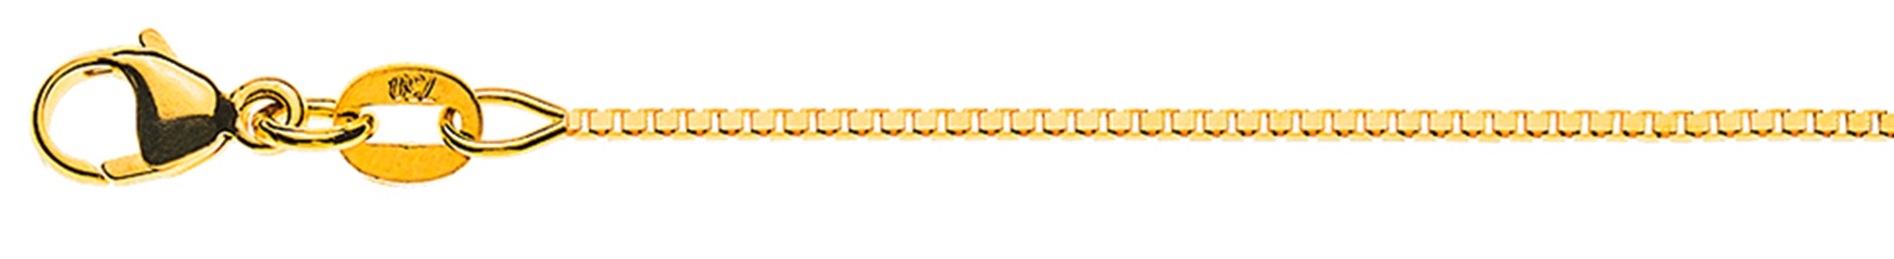 AURONOS Élégance Necklace yellow gold 14K Venetian chain diamond 60cm 0.9mm